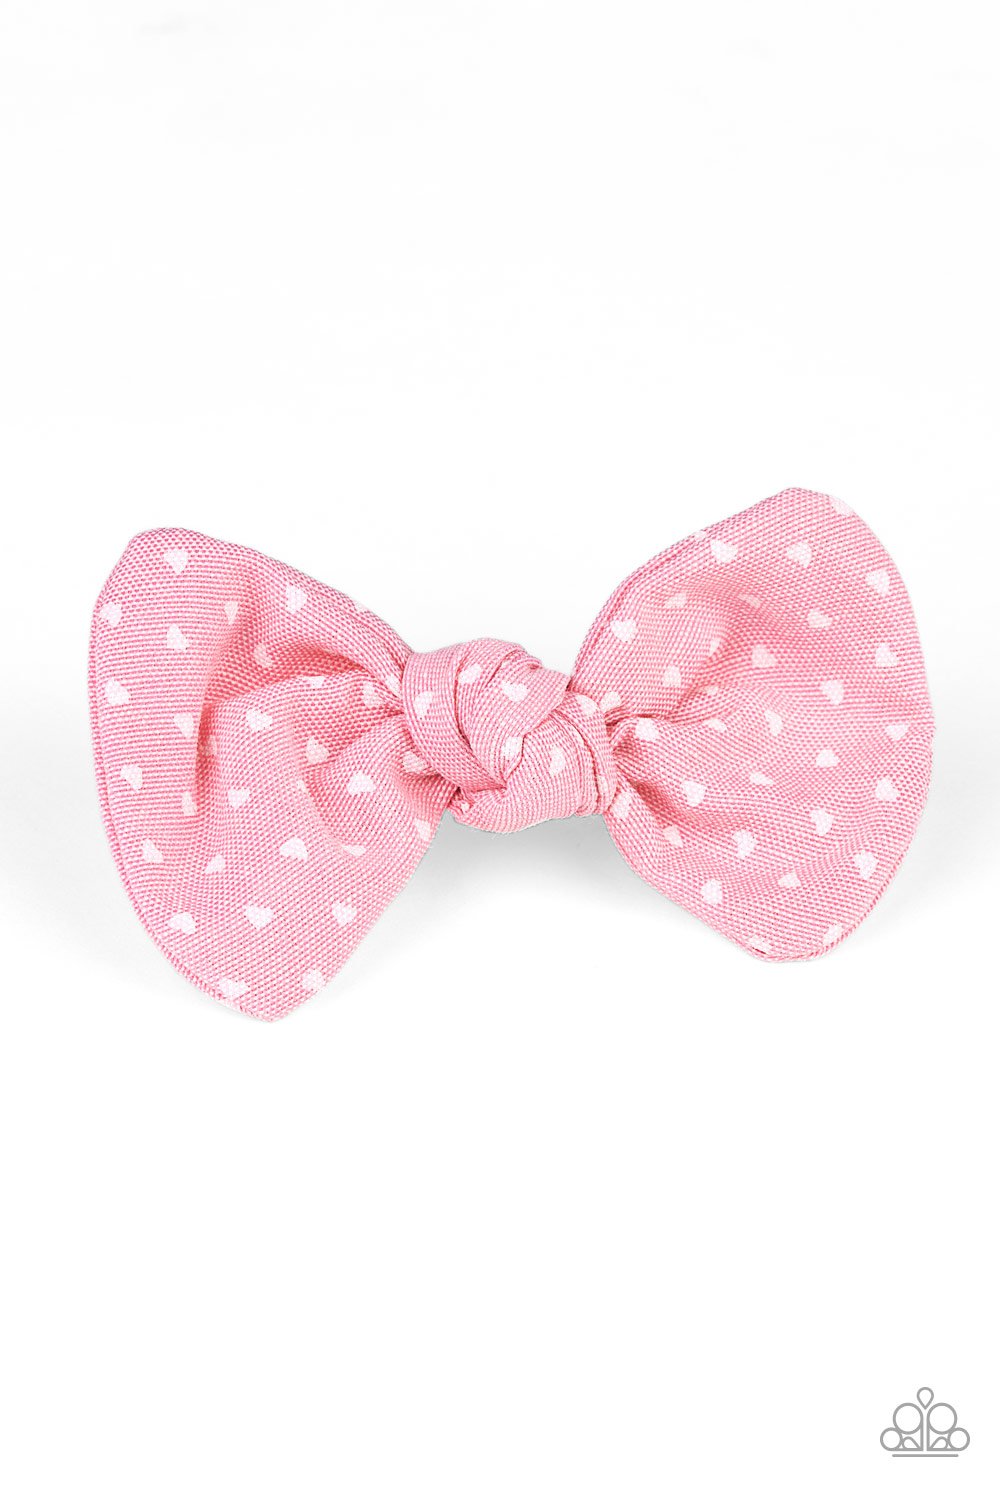 BOW a Kiss-pink-Paparazzi hair clip